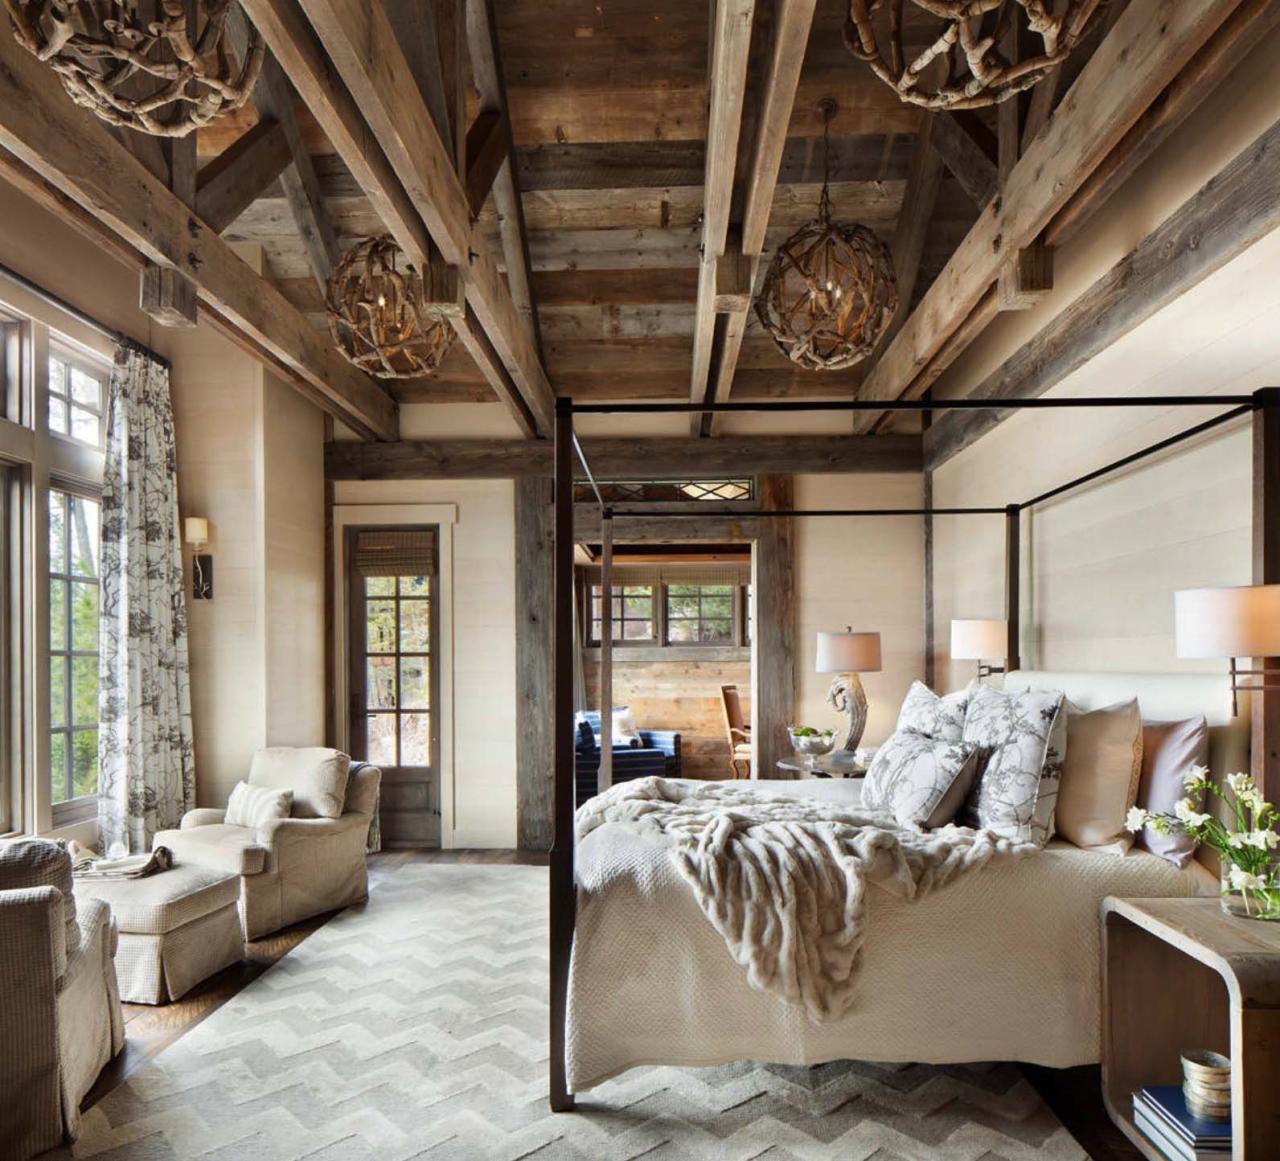 Cozy rustic bedroom interior designs winter besthomish